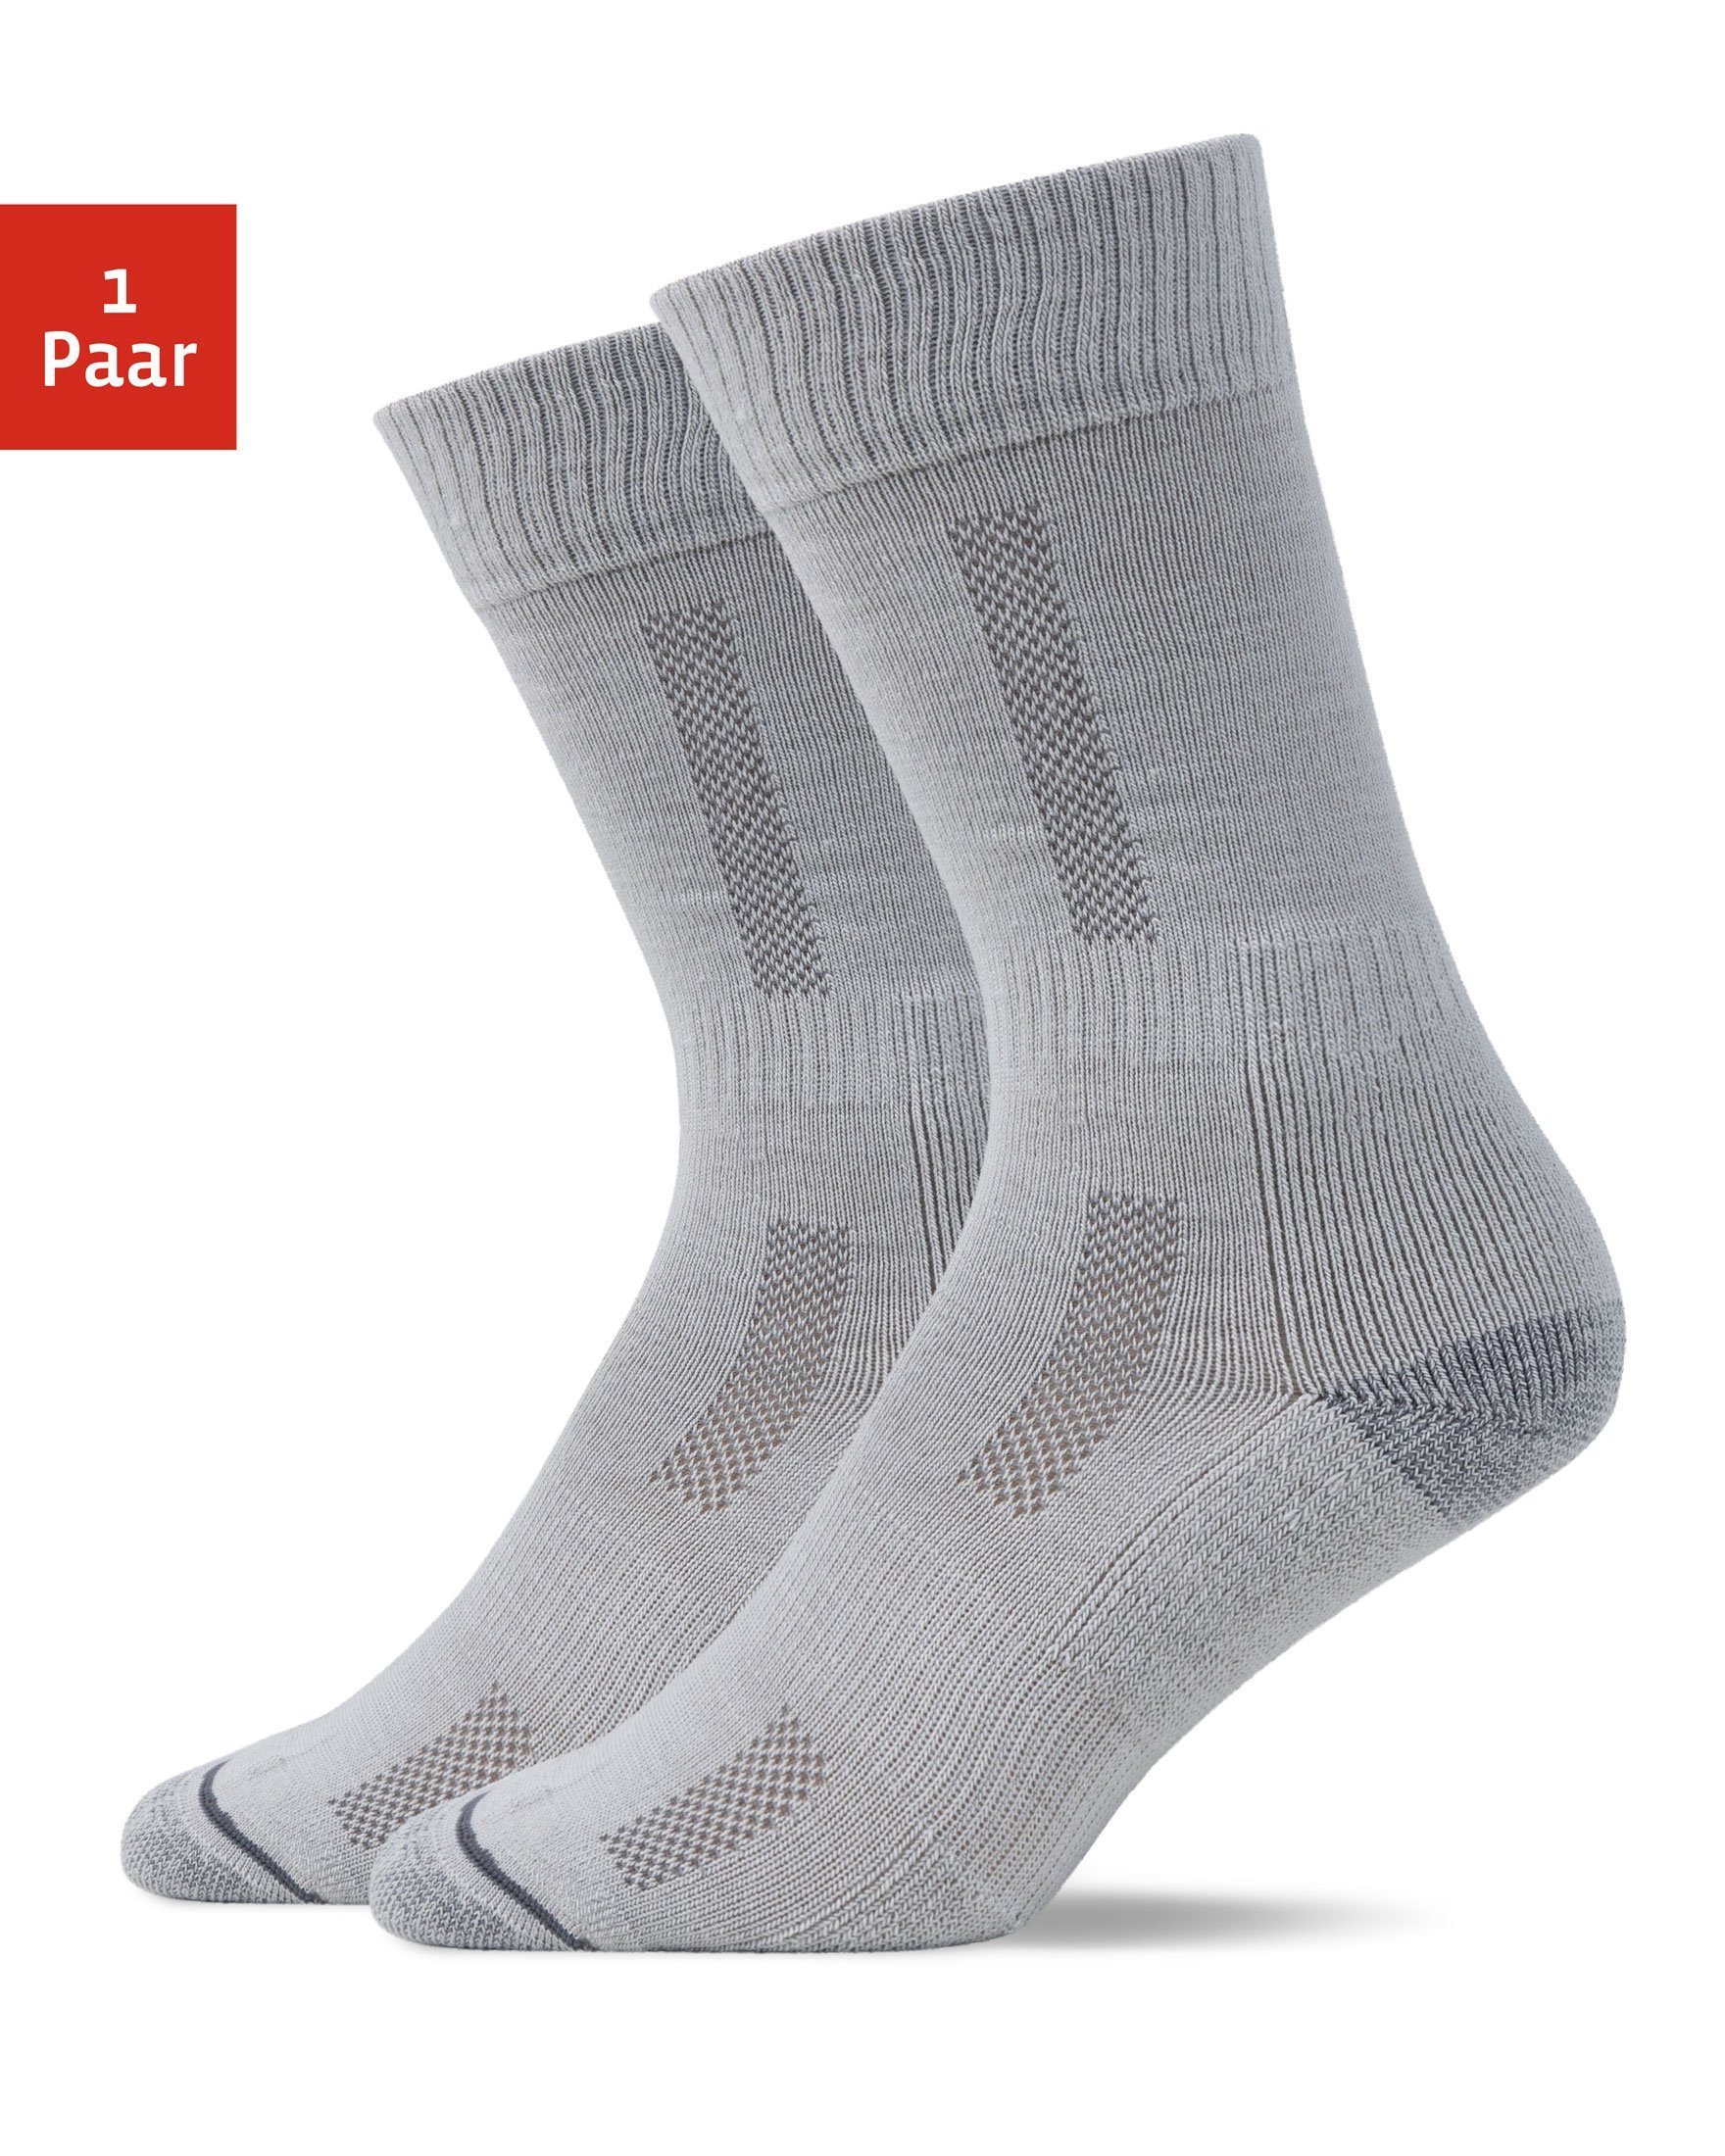 SNOCKS Wandersocken Hiking Socks für Damen & Herren (1-Paar) mit Merinowolle, garantiert keine Schweißfüße 04 Grau